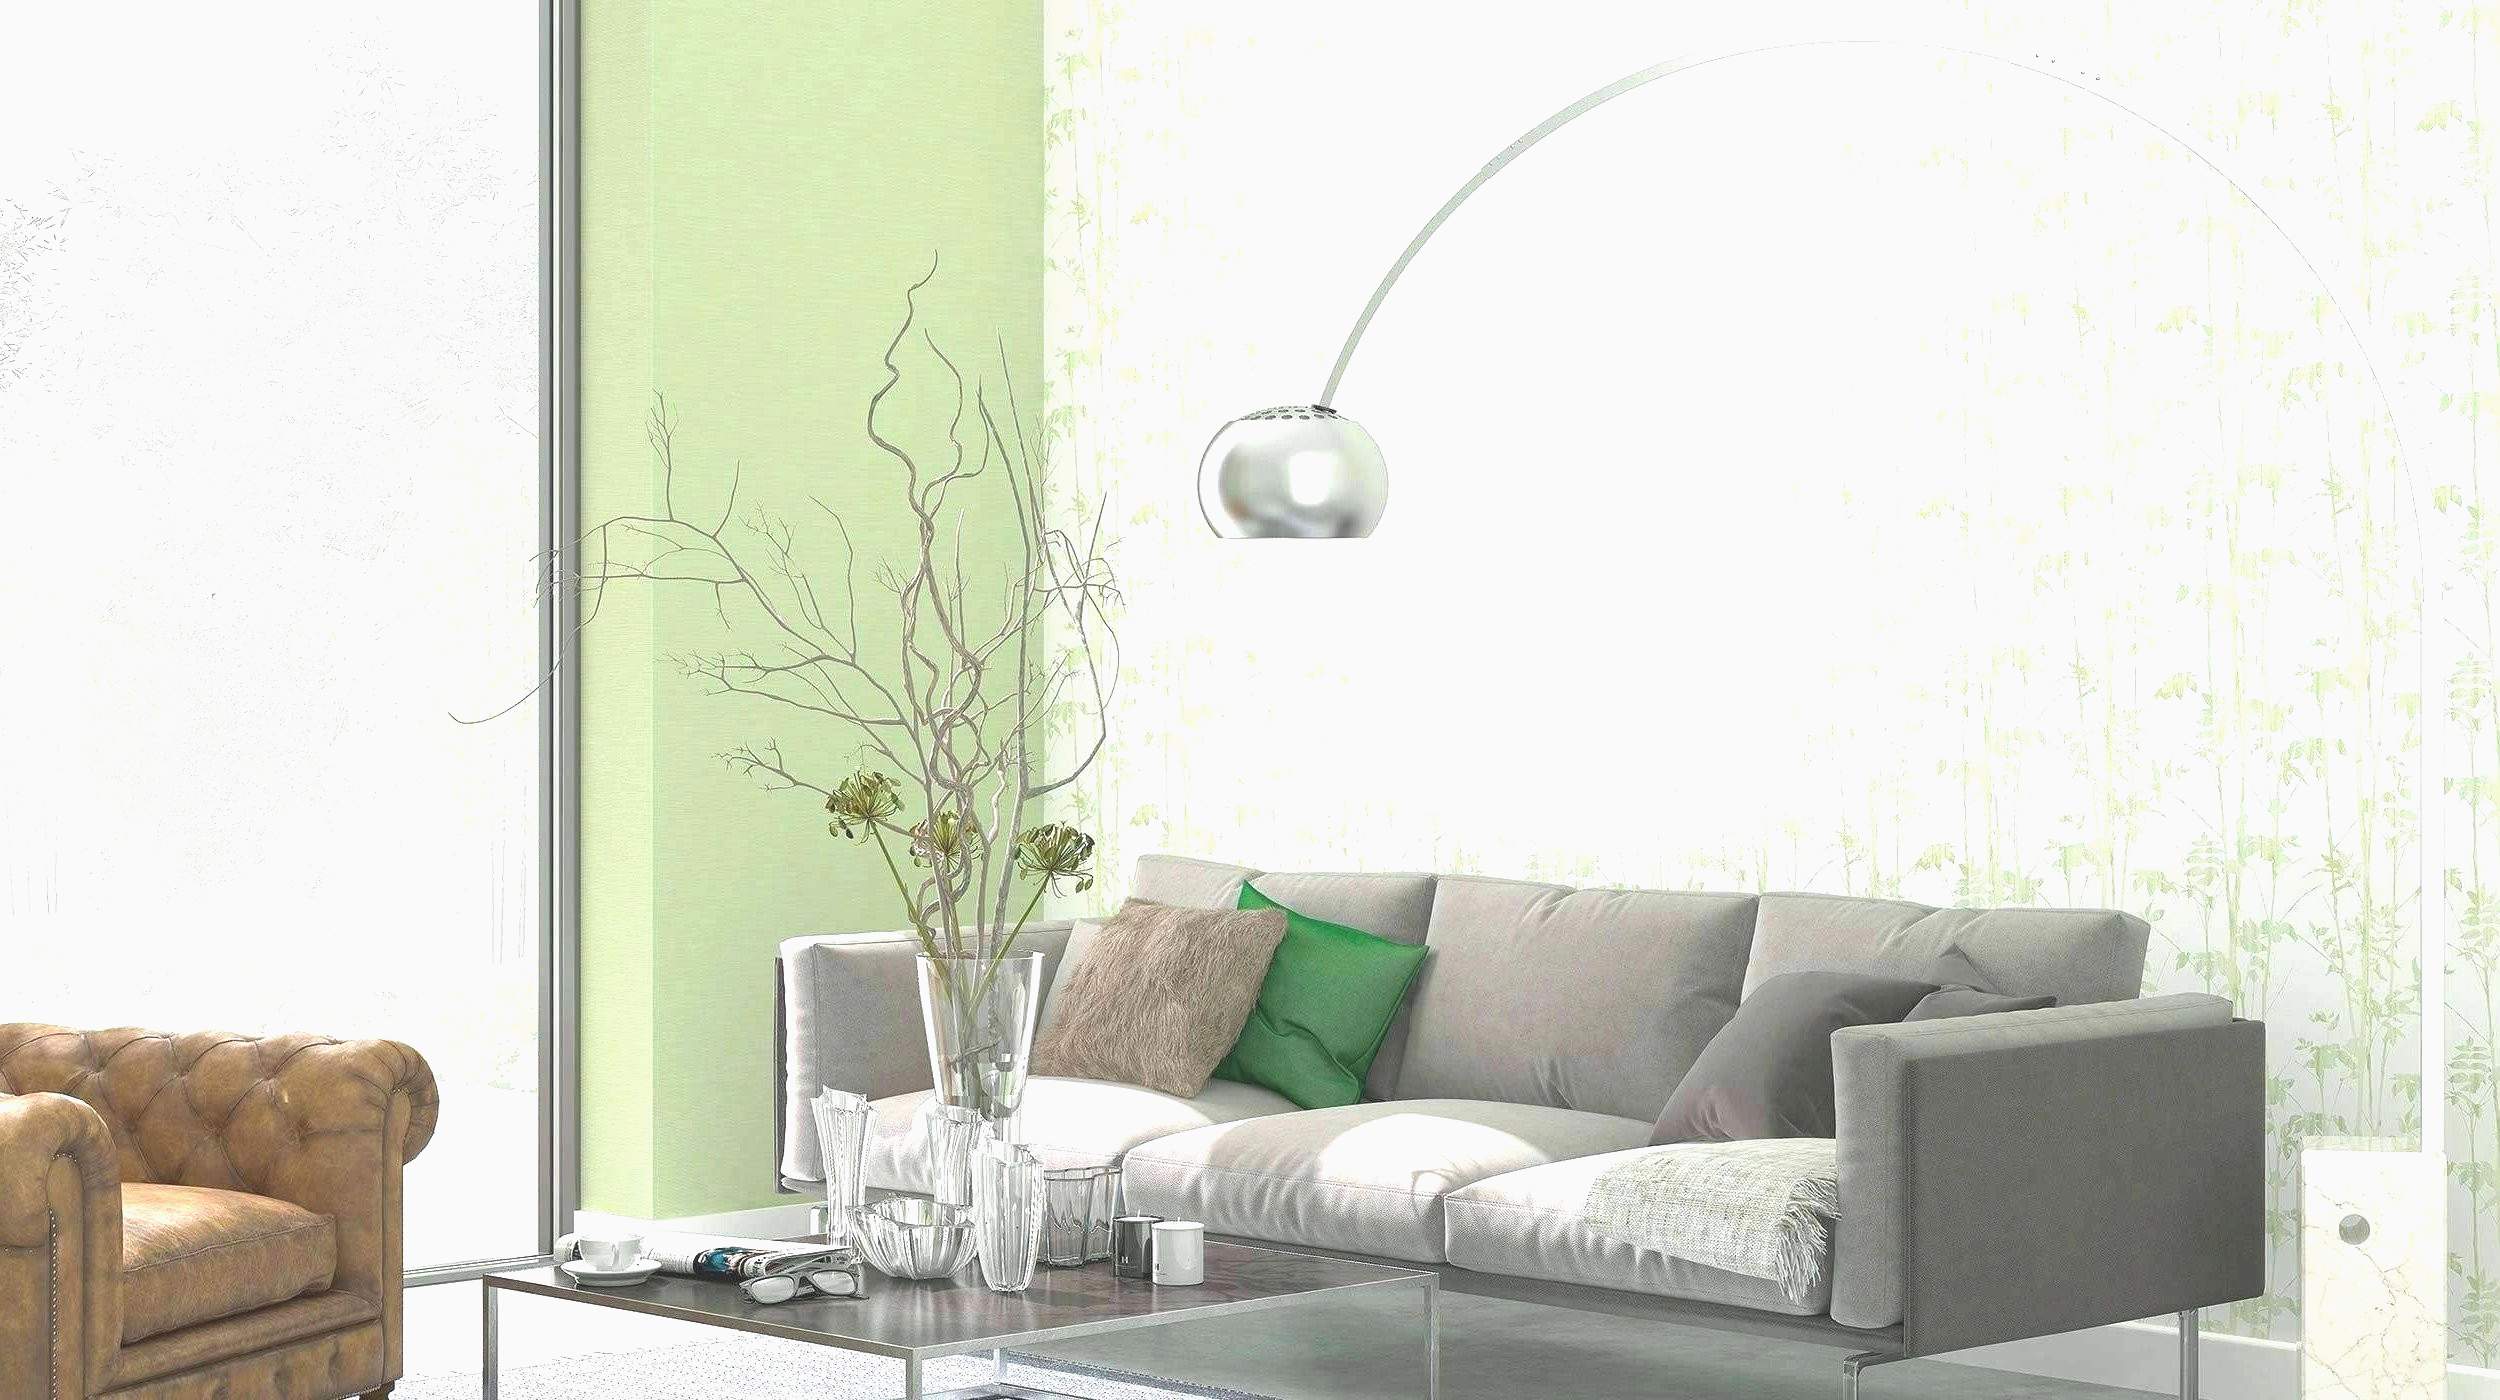 grune wand wohnzimmer luxus 37 neu garten shabby h0jzsq design of grune wand wohnzimmer